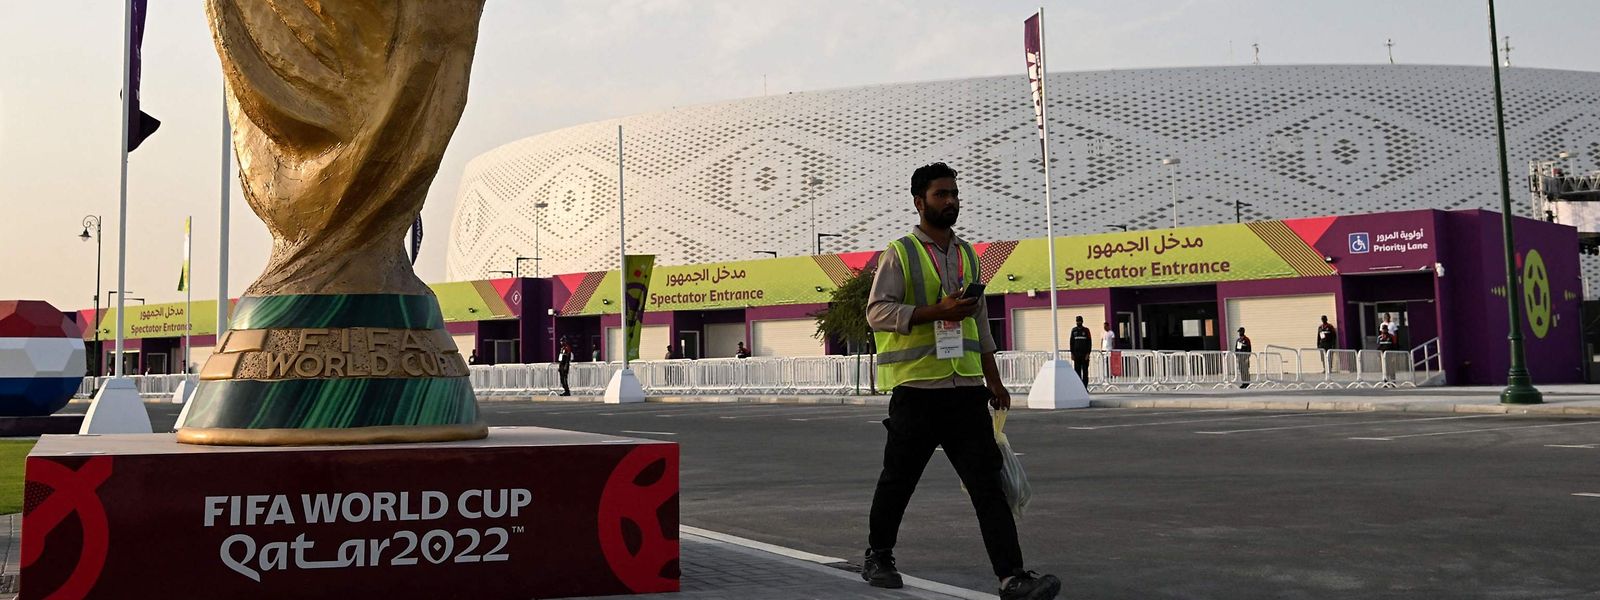 Le stade Al-Thumama de Doha est prêt à accueillir les supporters pour la Coupe du monde 2022 de football. Mais les fans seront-ils au rendez-vous?